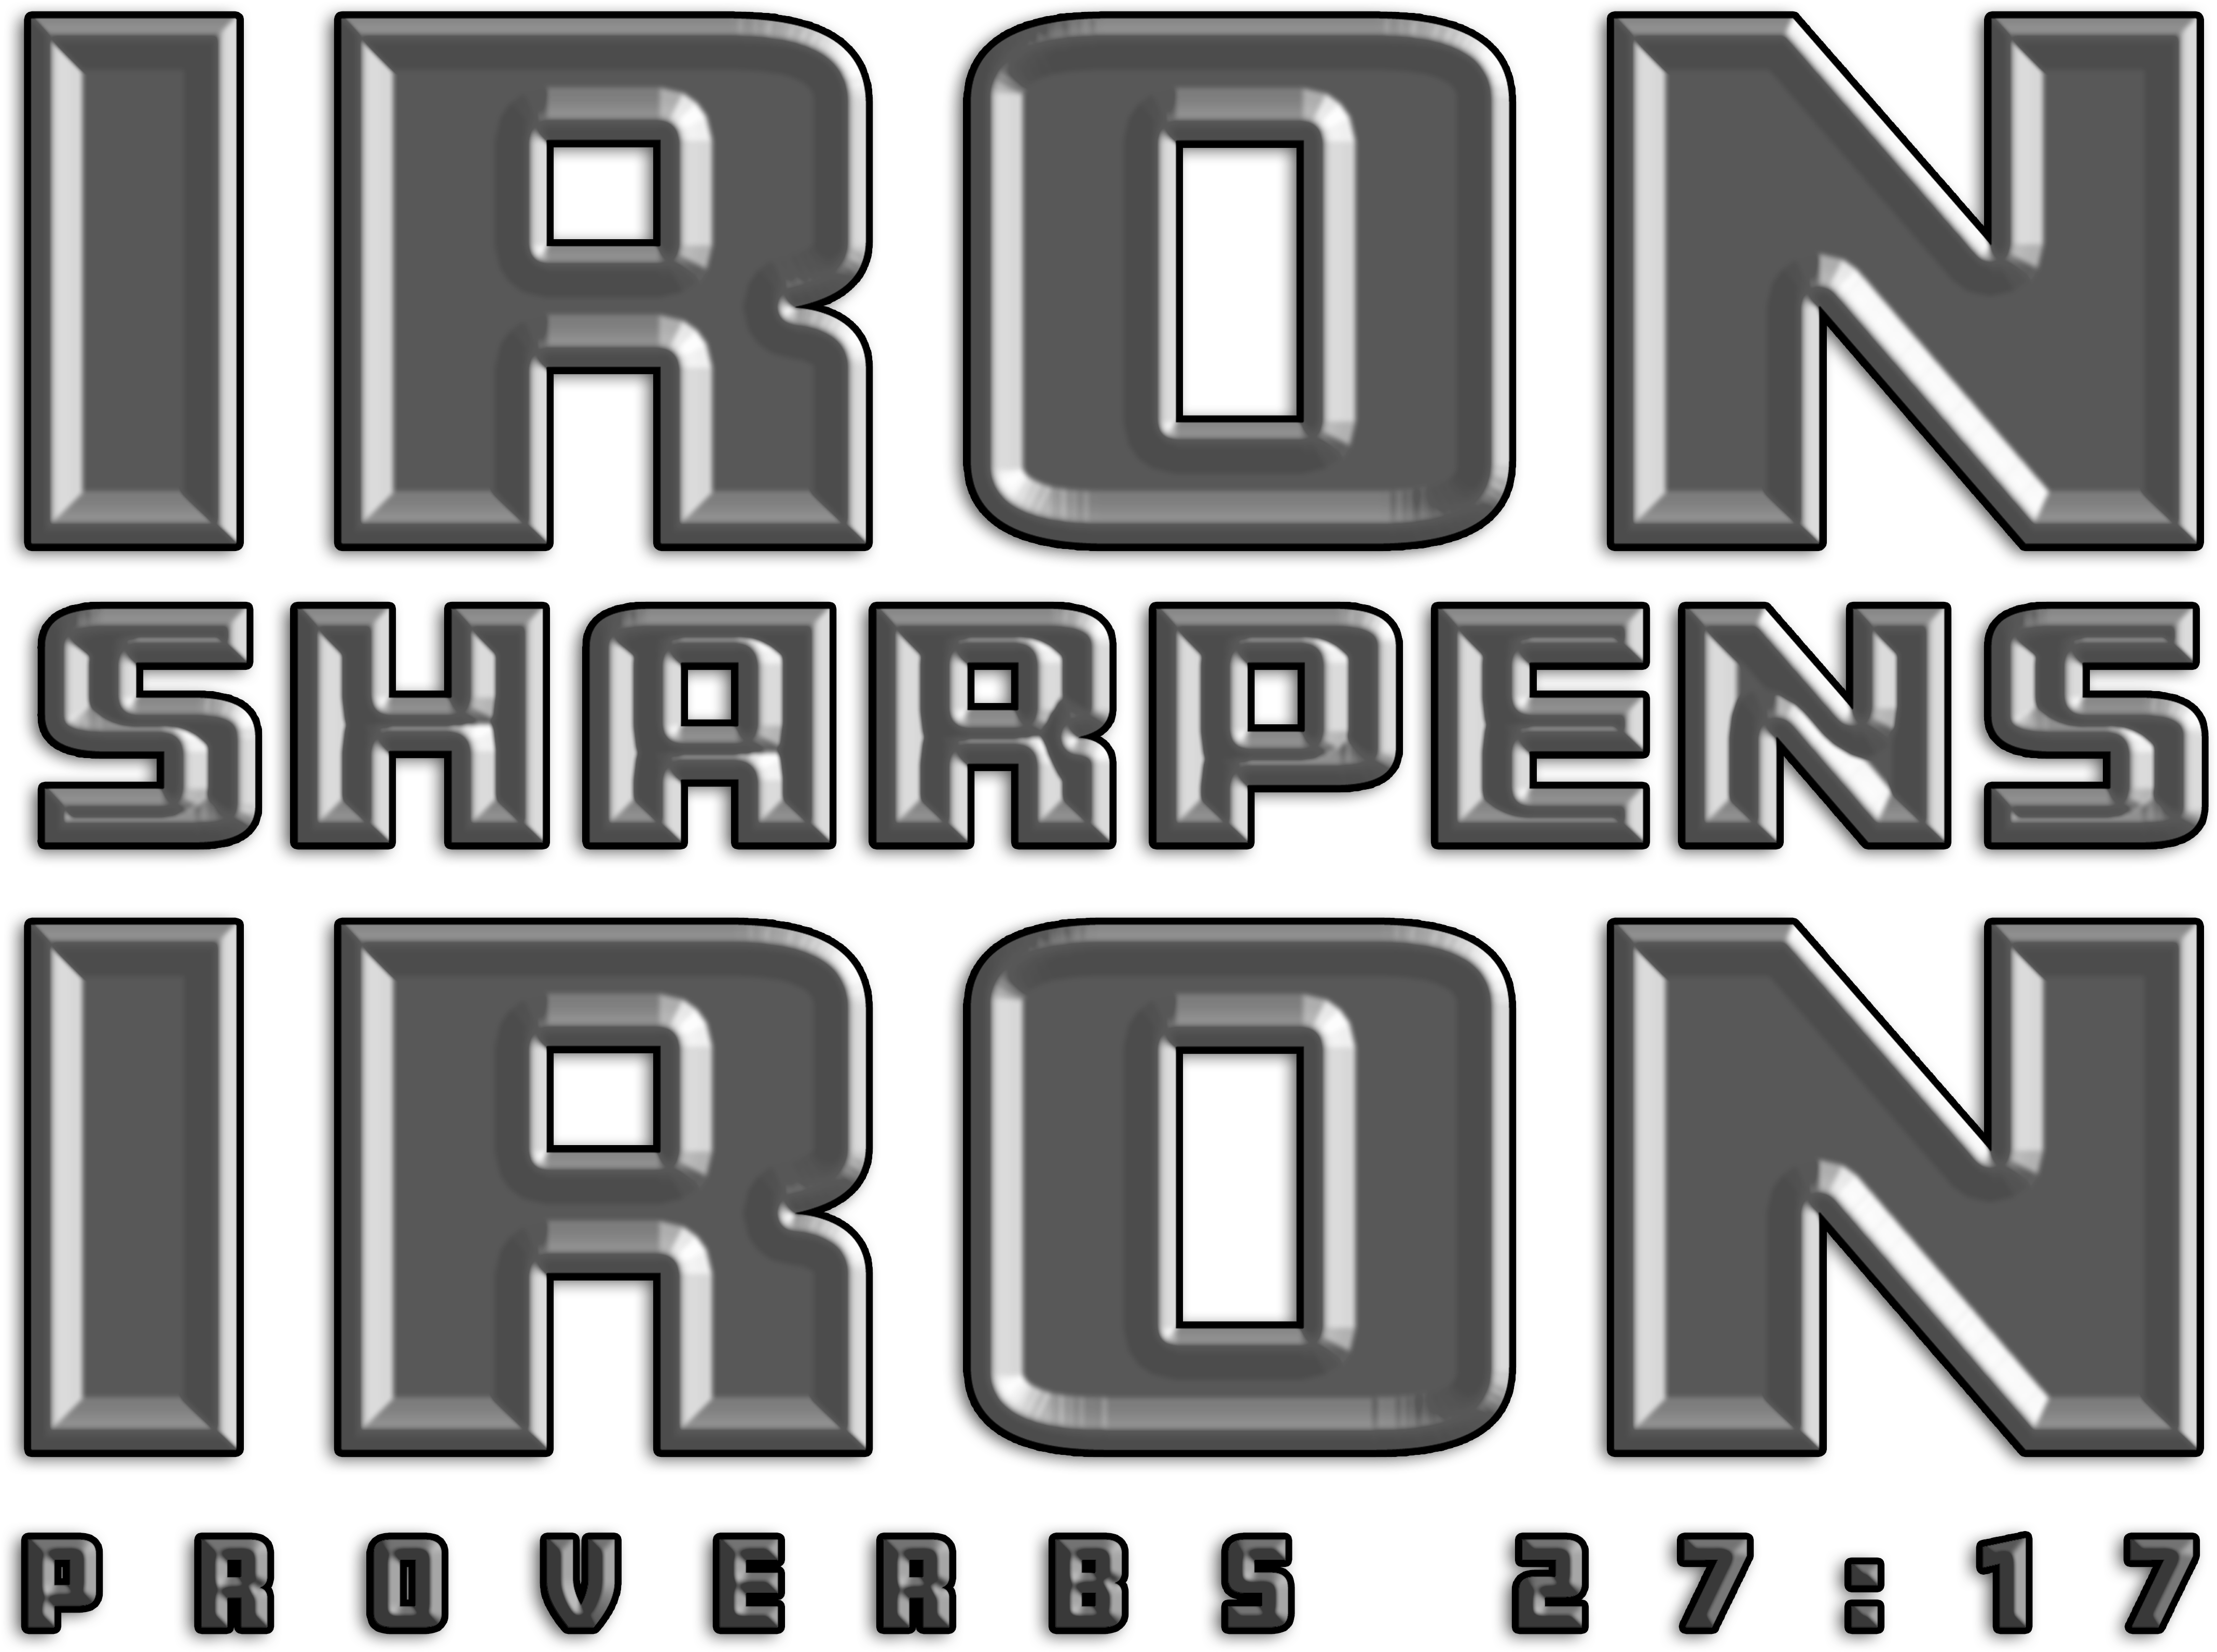 Iron Sharpens Iron Proverbs2717